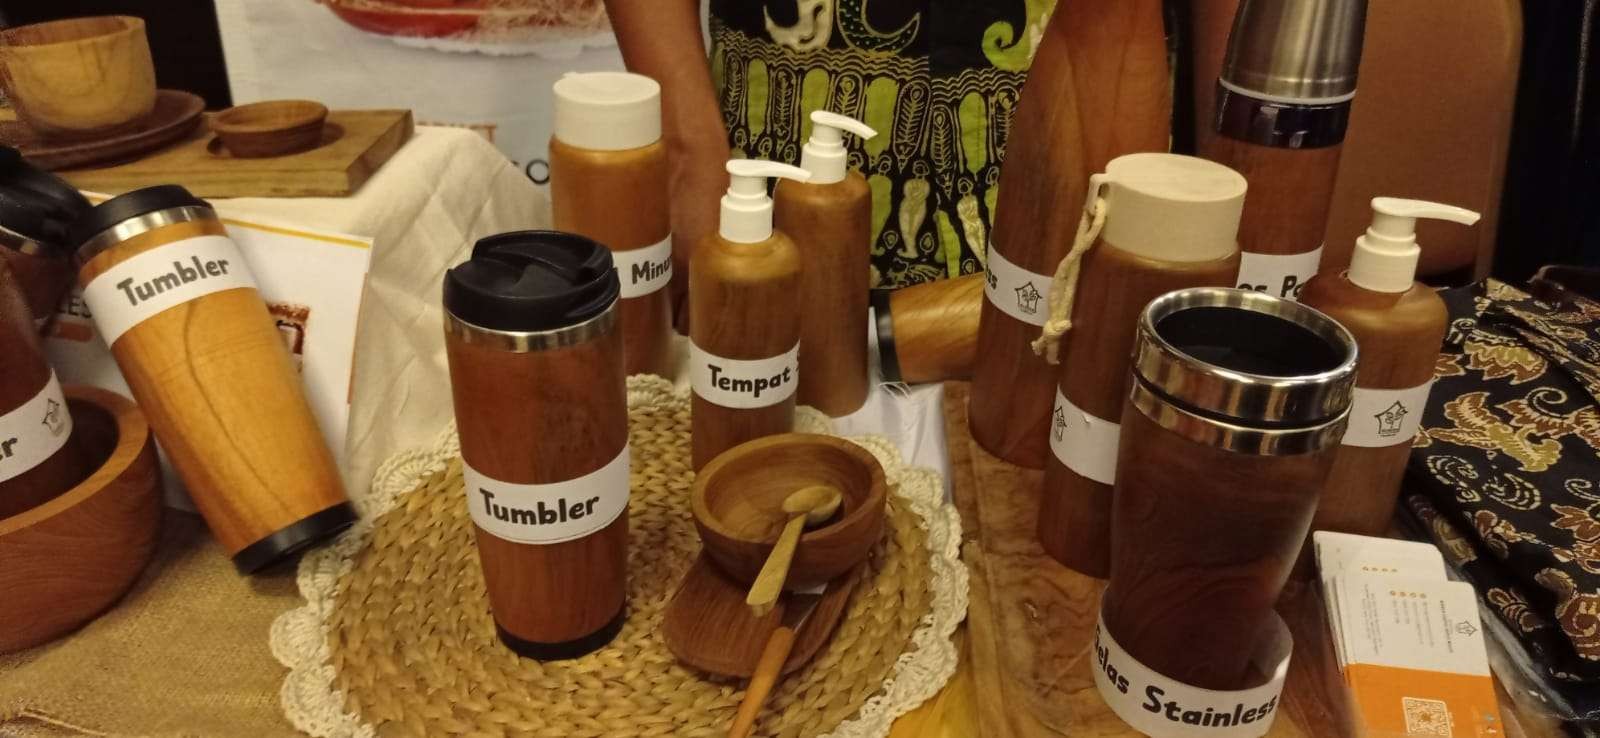 Pelbagai produk tempat minuman dari akar kayu jati. Ada mug, termos, dan lainnya produk asli Kecamatan Margomulyo, Bojonegoro. (Foto: dok. BumDes Margomulyo)